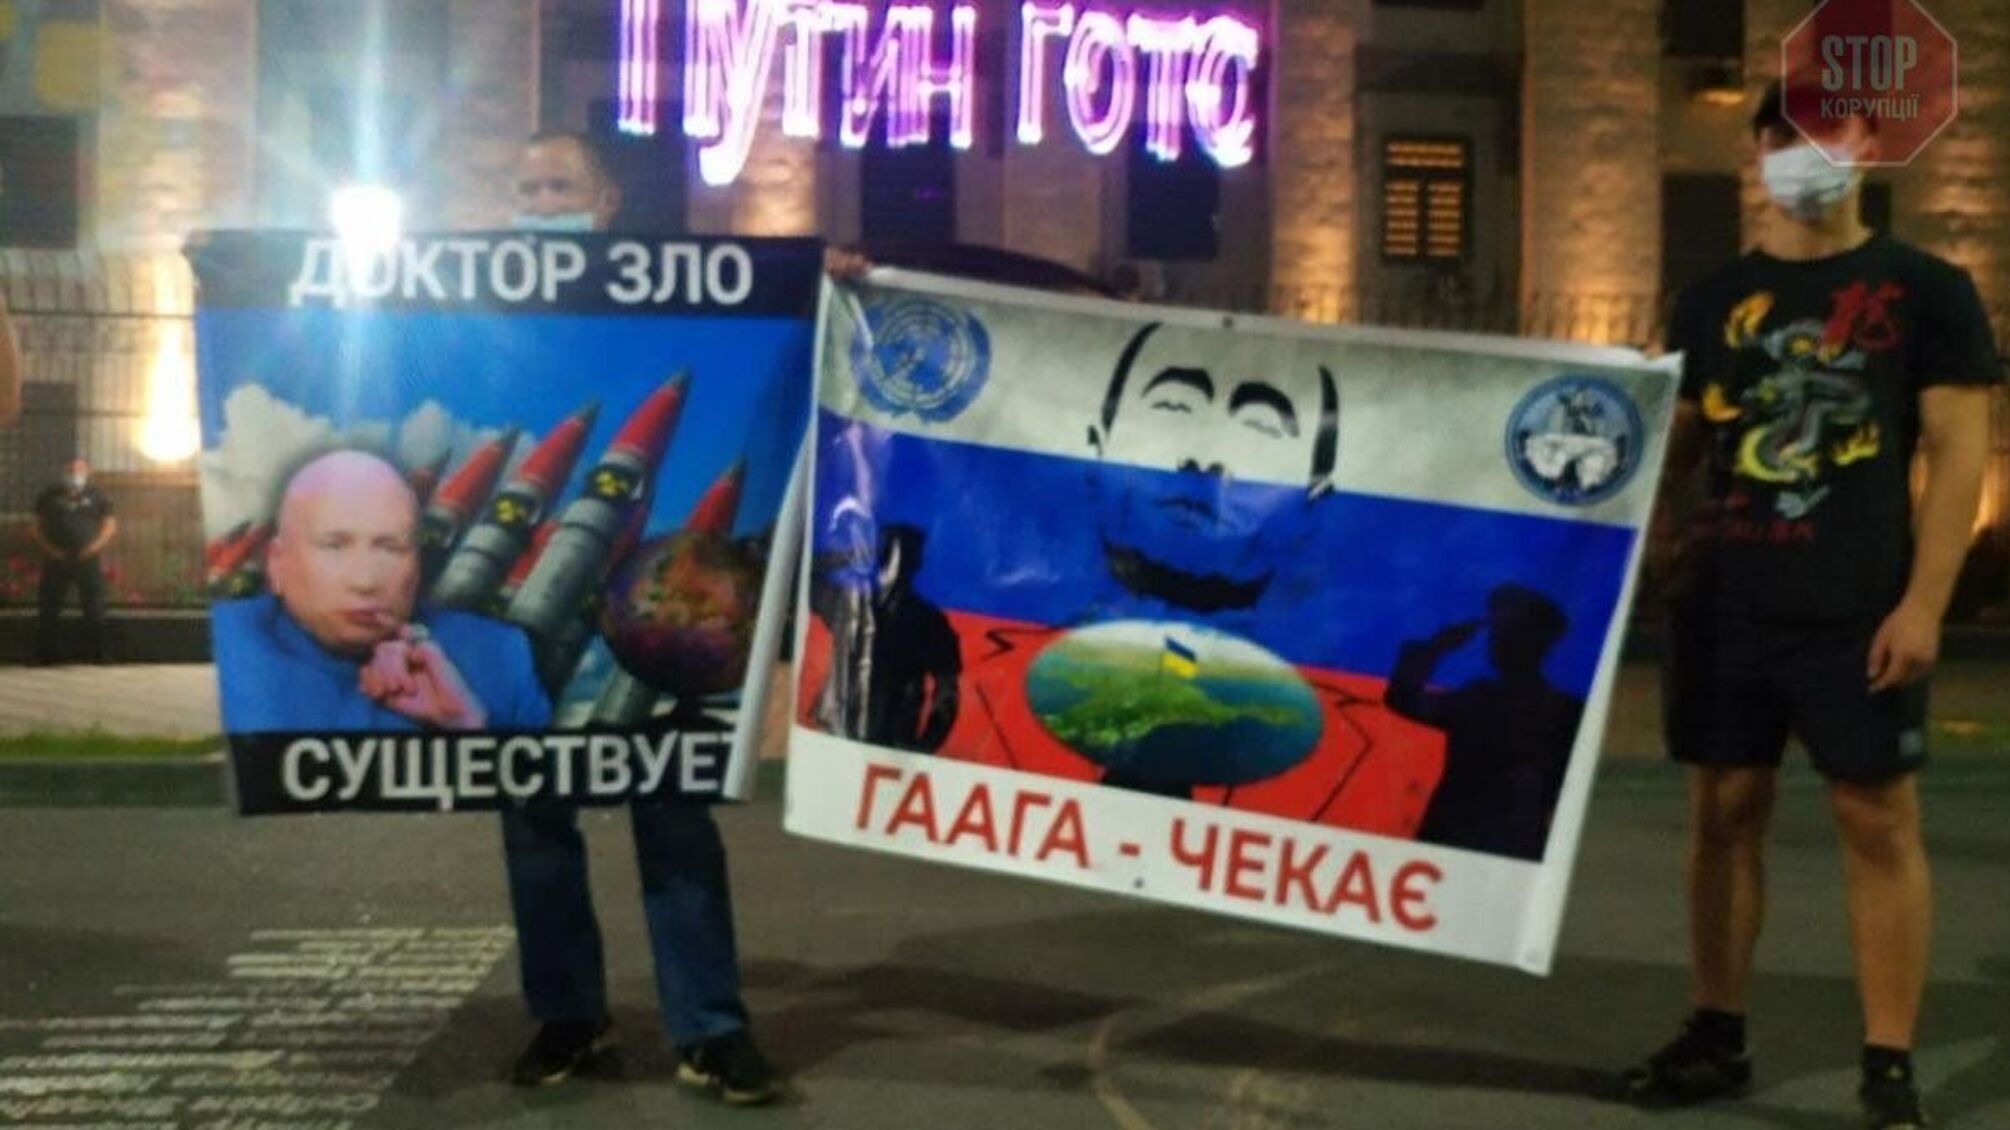 ''Вова, Гаага ждет'': у посольства России в Киеве провели ''анти-путинскую'' акцию протеста(фото)